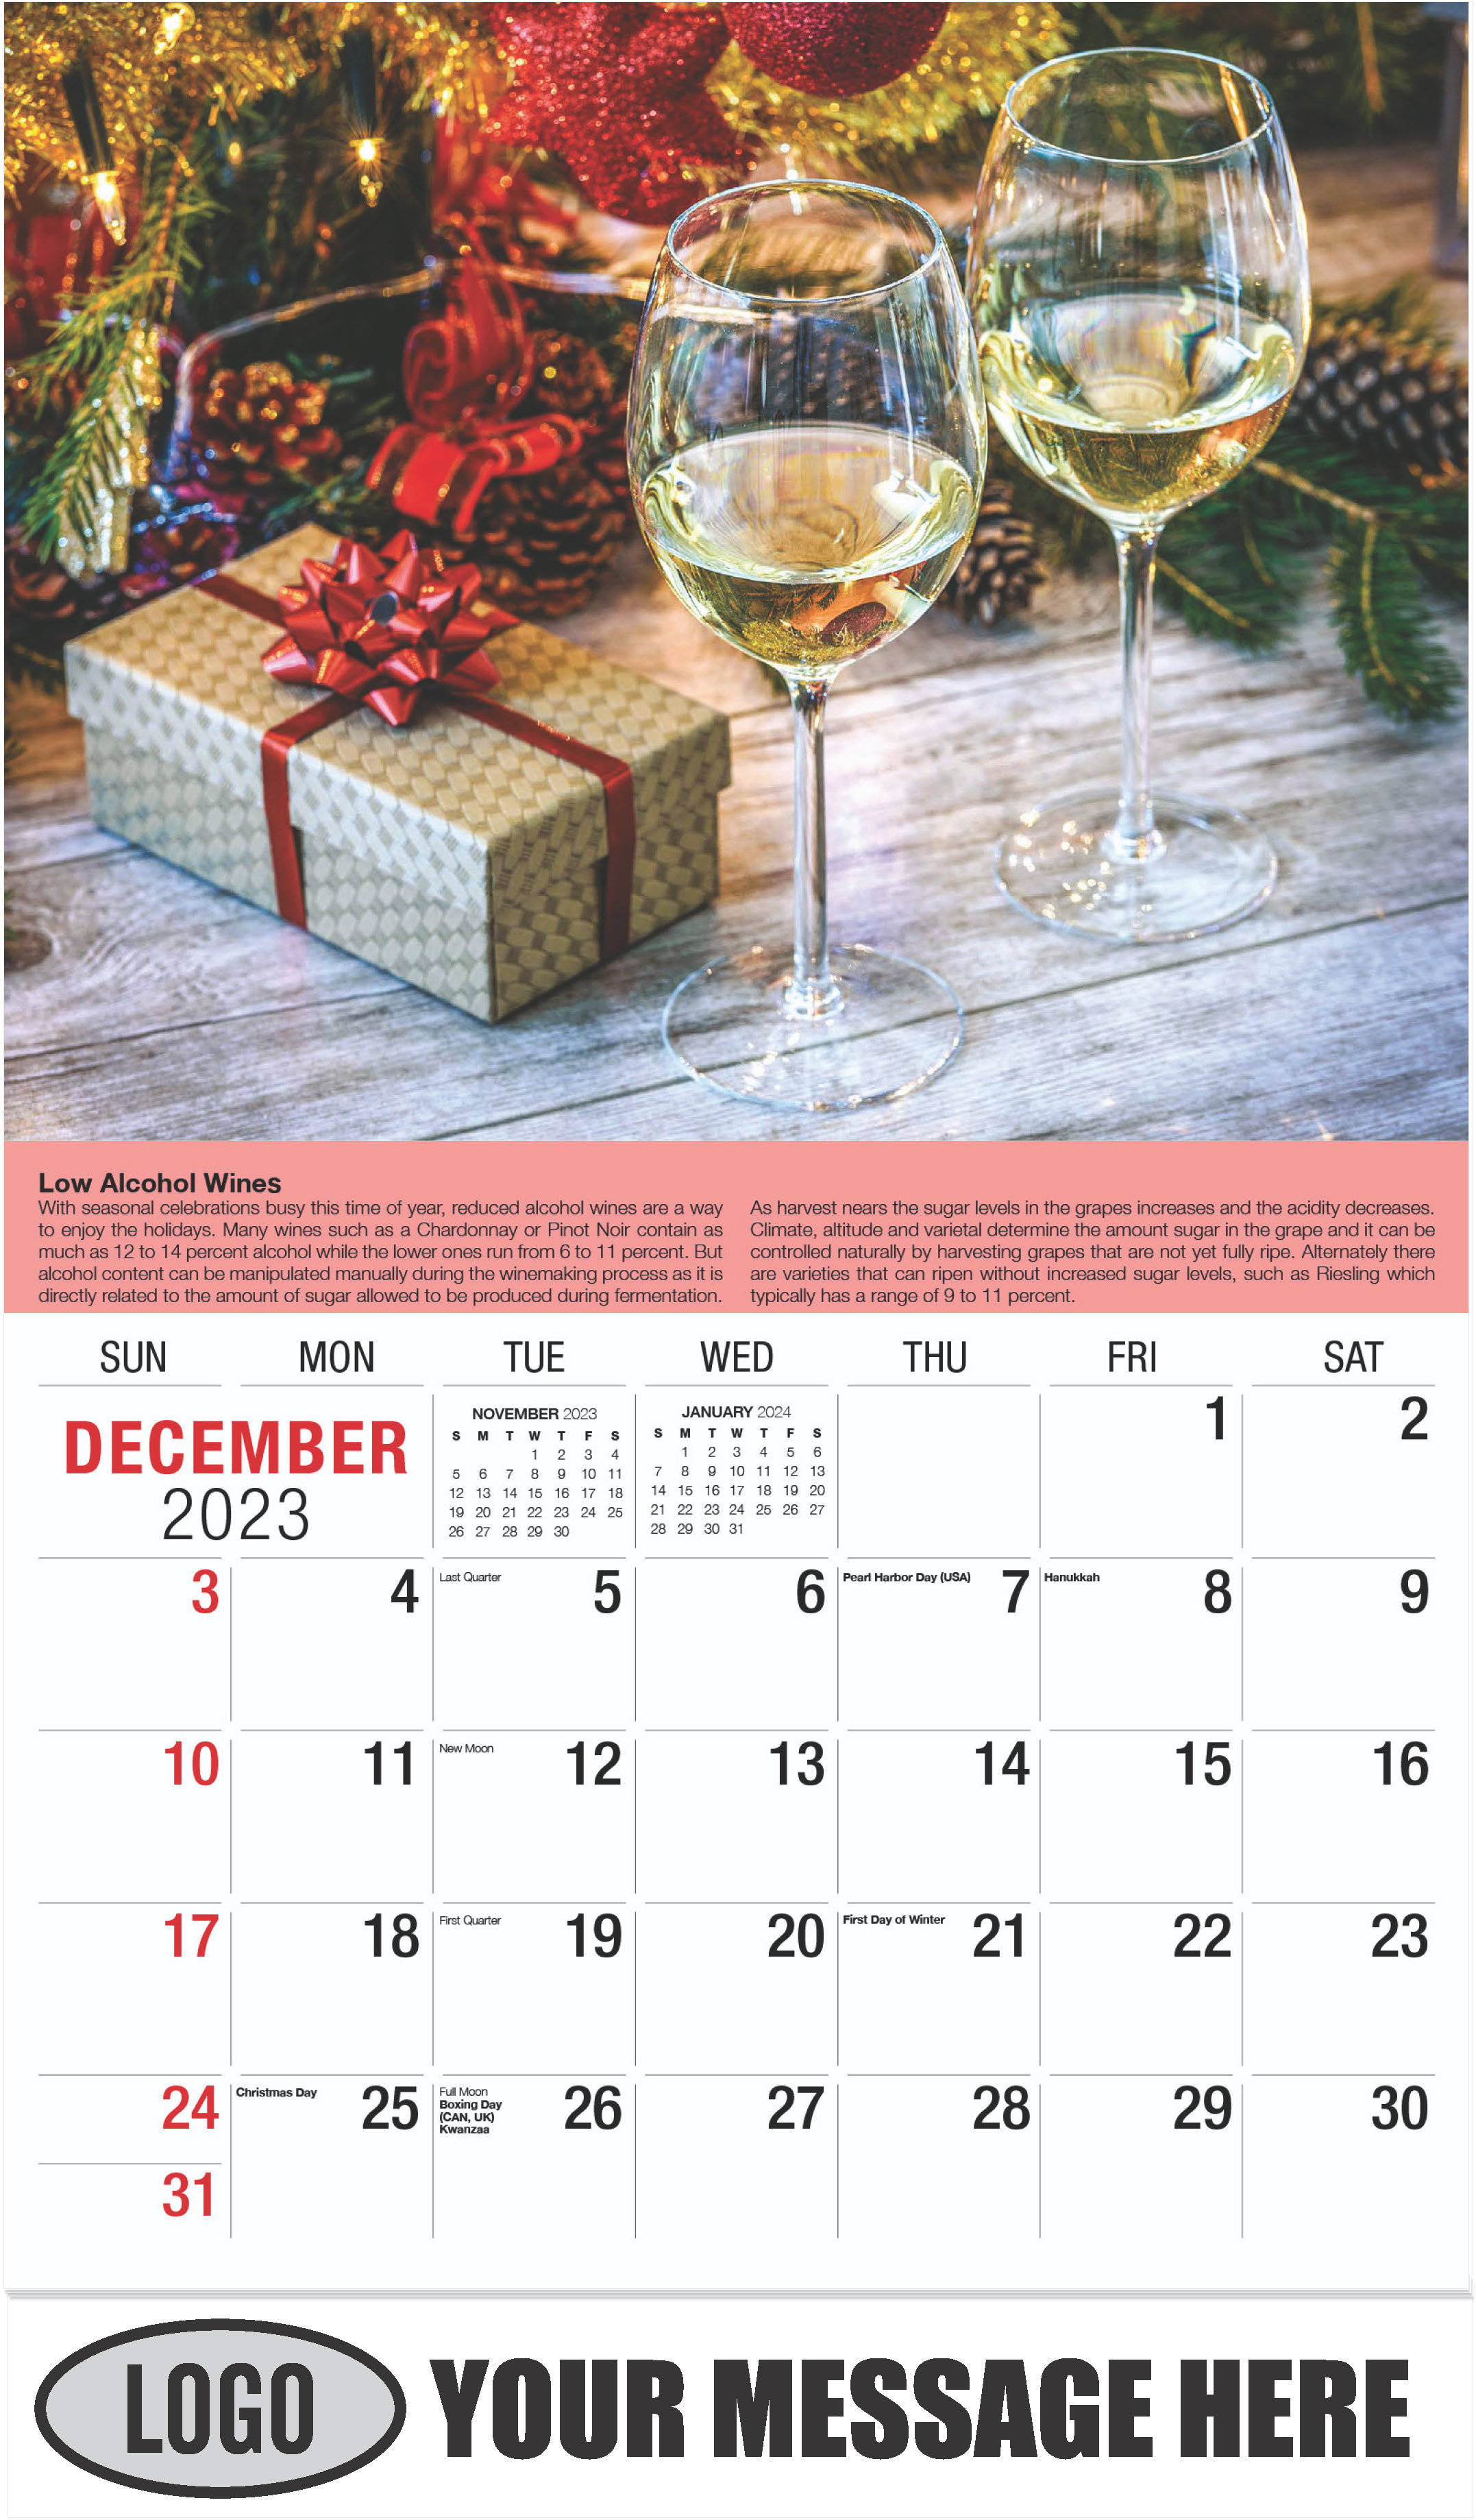 Wine Tips Calendar - December 2023 - Vintages 2023 Promotional Calendar